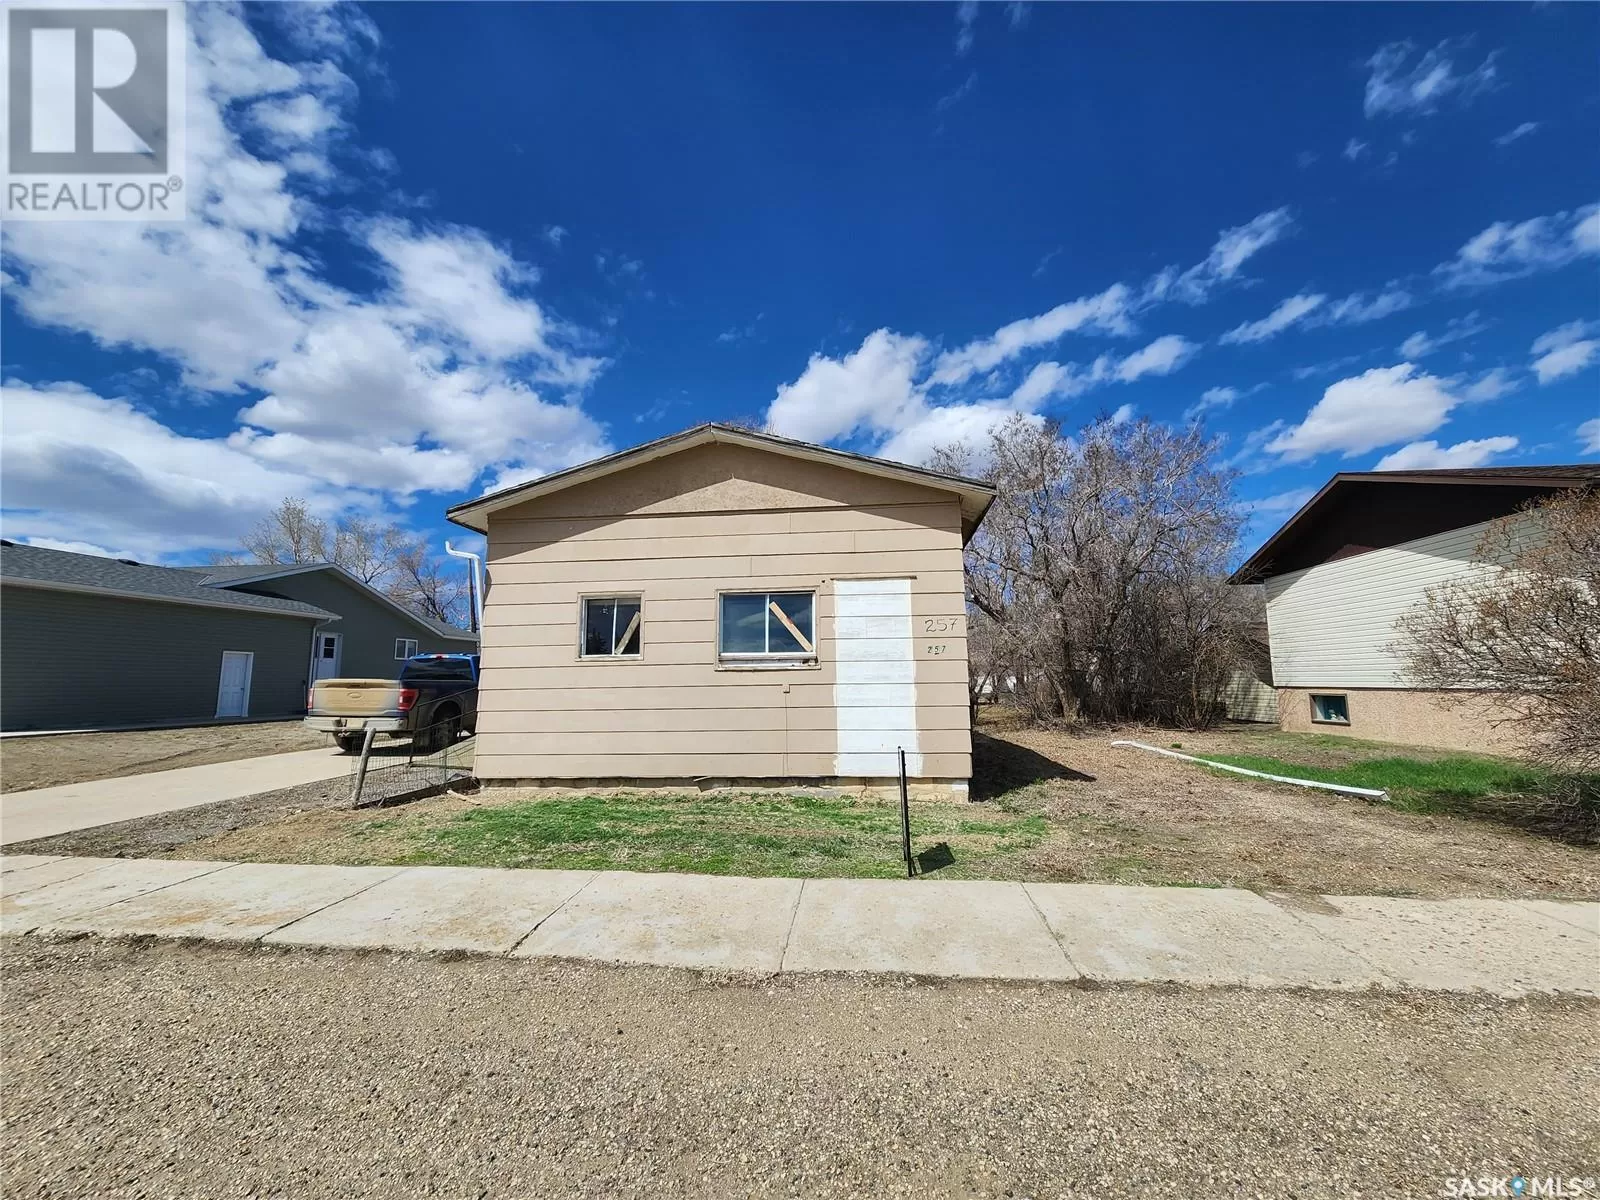 House for rent: 257 4th Avenue E, Gravelbourg, Saskatchewan S0H 1X0